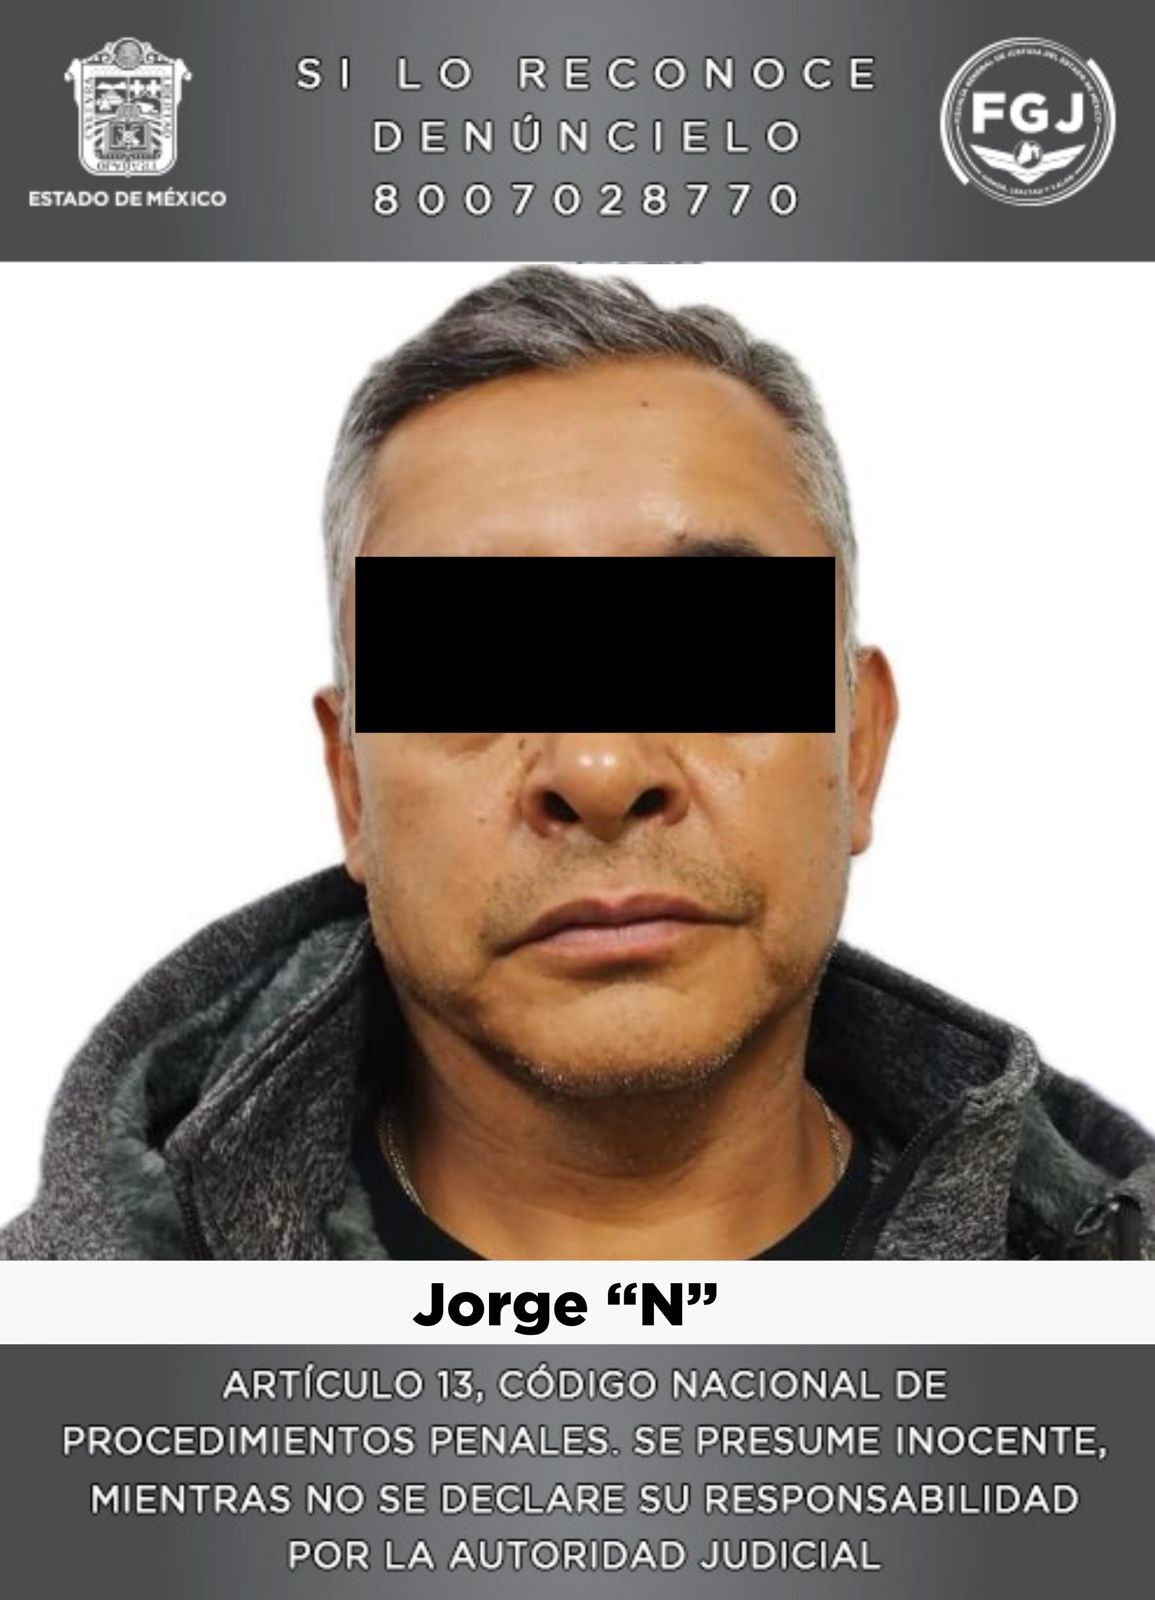 Posible implicado en el delito de maltrato animal en Naucalpan fue ingresado al penal por elementos de la FGJEM